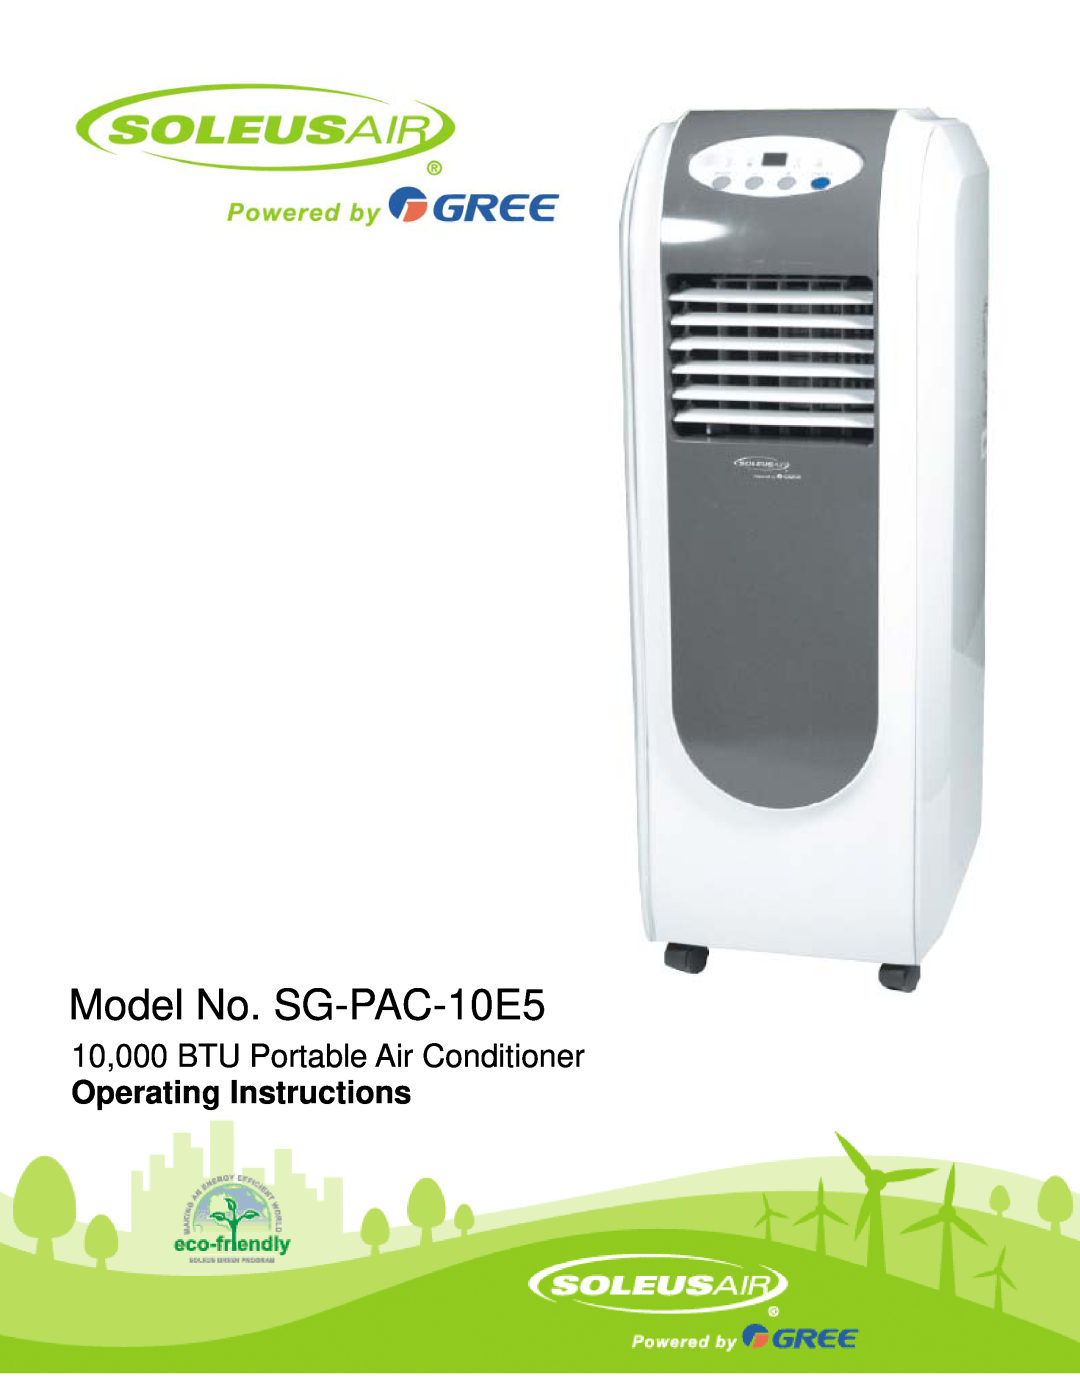 Soleus Air operating instructions Model No. SG-PAC-10E5, Reference No. KY-100E5, 10,000 BTU Portable Air Conditioner 